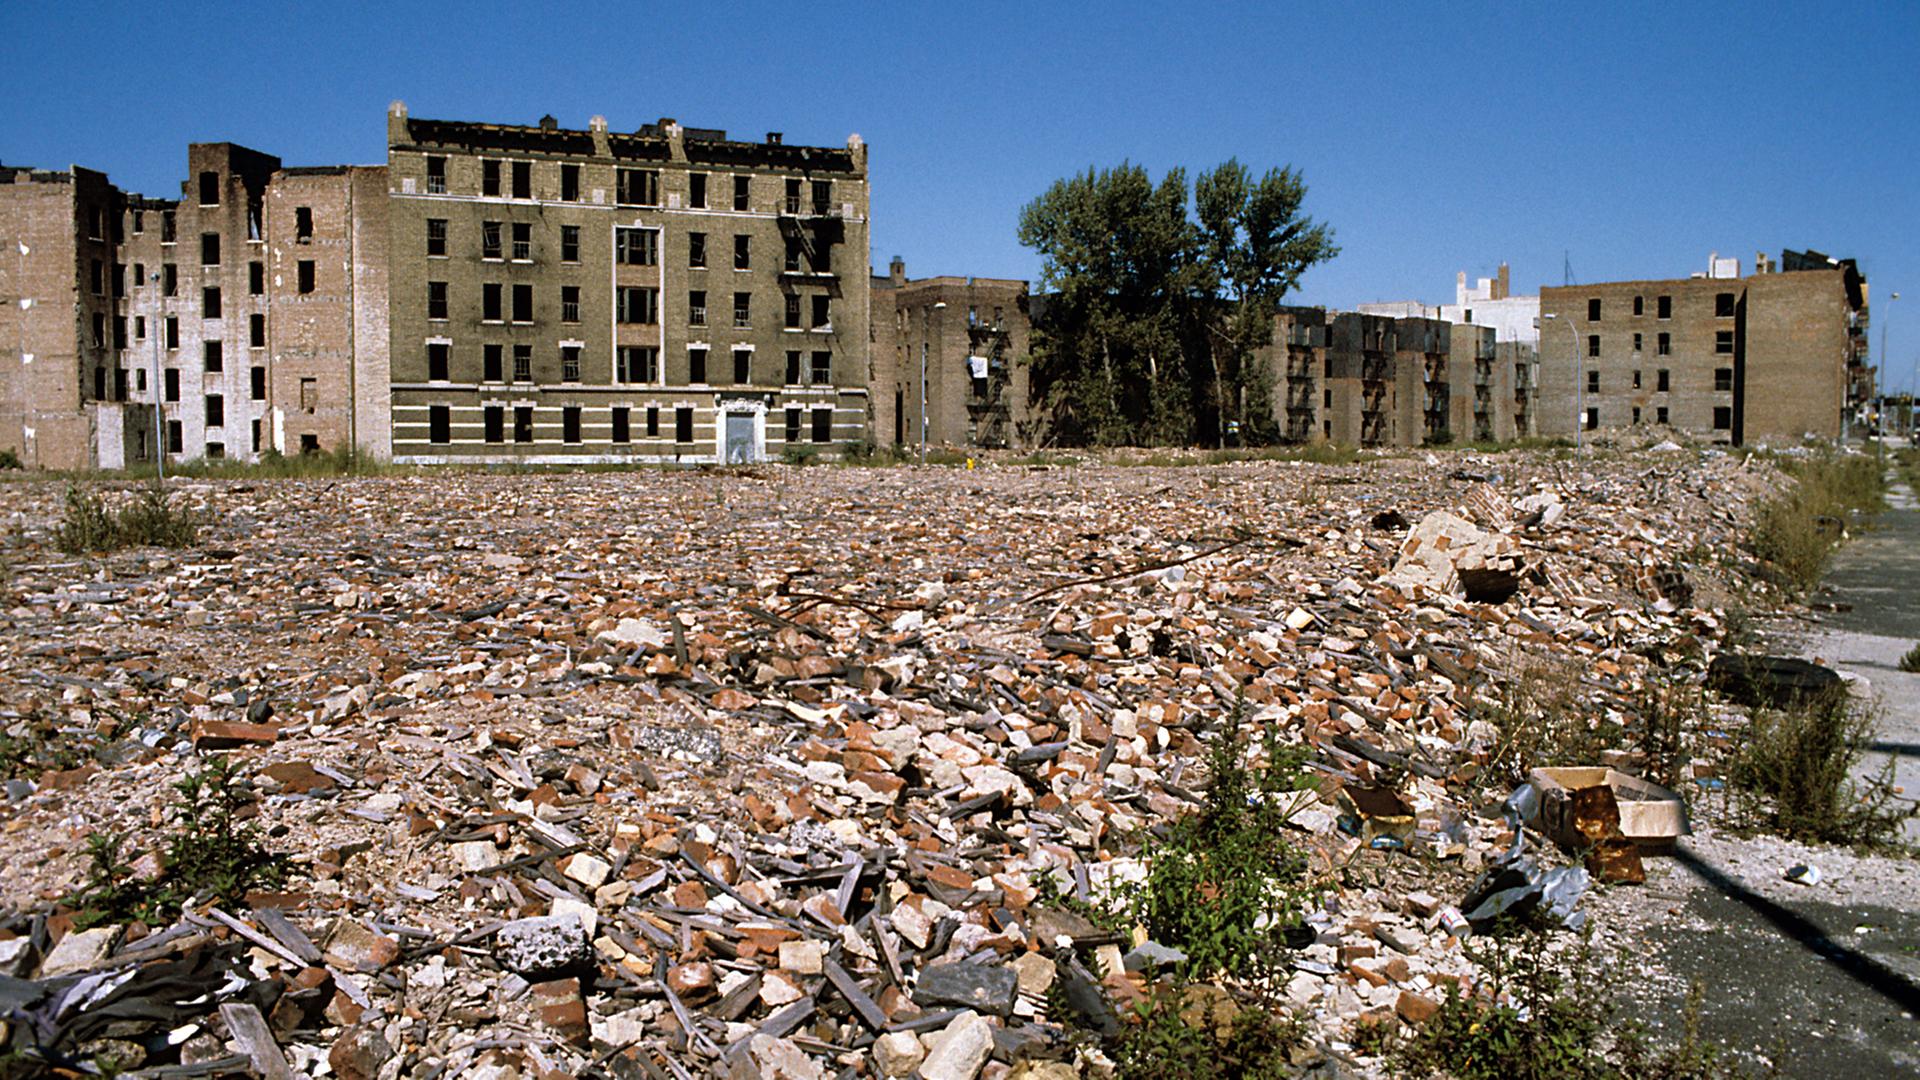 Blick über eine weitläufige Fläche mit Bauschutt und Müll auf verfallene, ehemals mehrstöckige Wohnhäuser im New Yorker Stadtteil Bronx. (Undatierte Aufnahme).